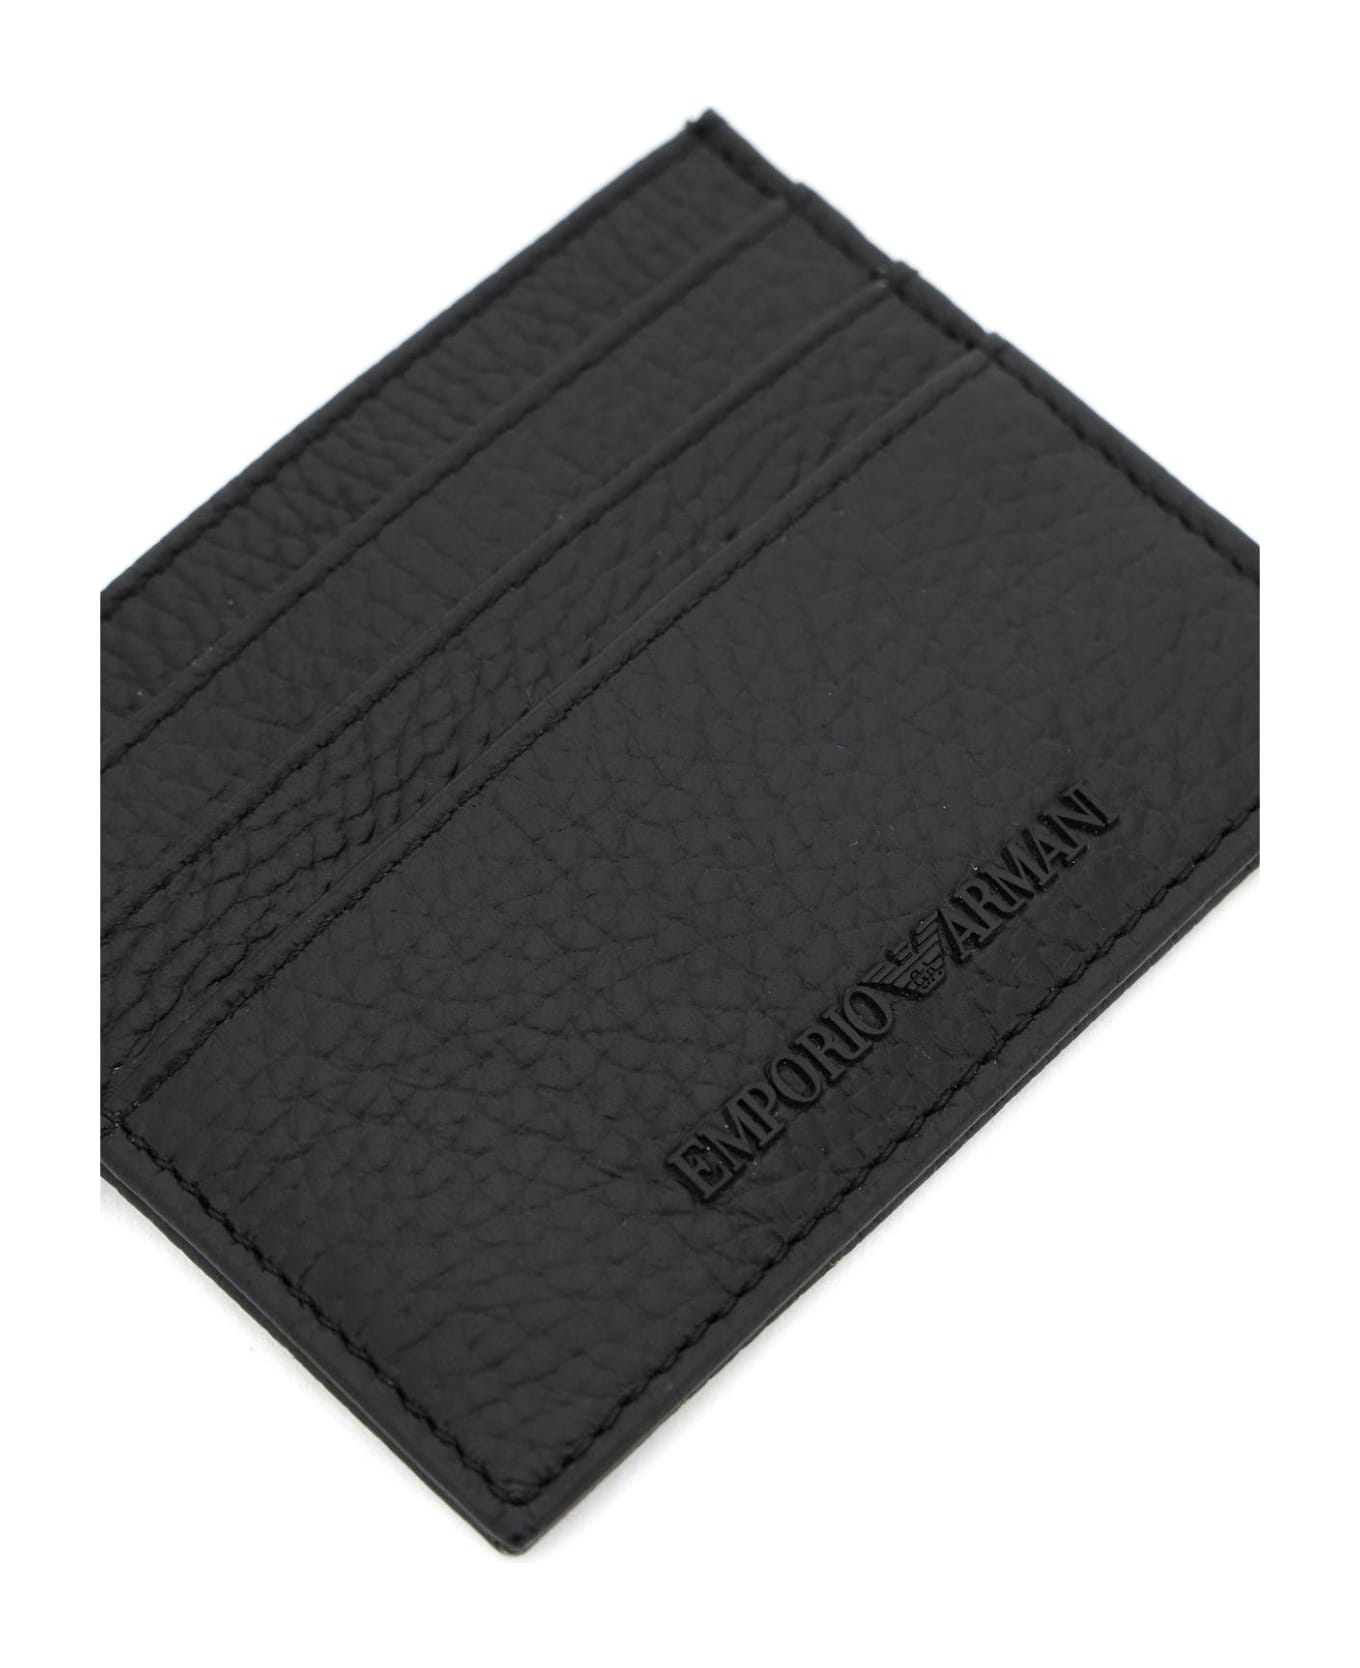 Emporio Armani Grained Leather Cardholder - Nero 財布